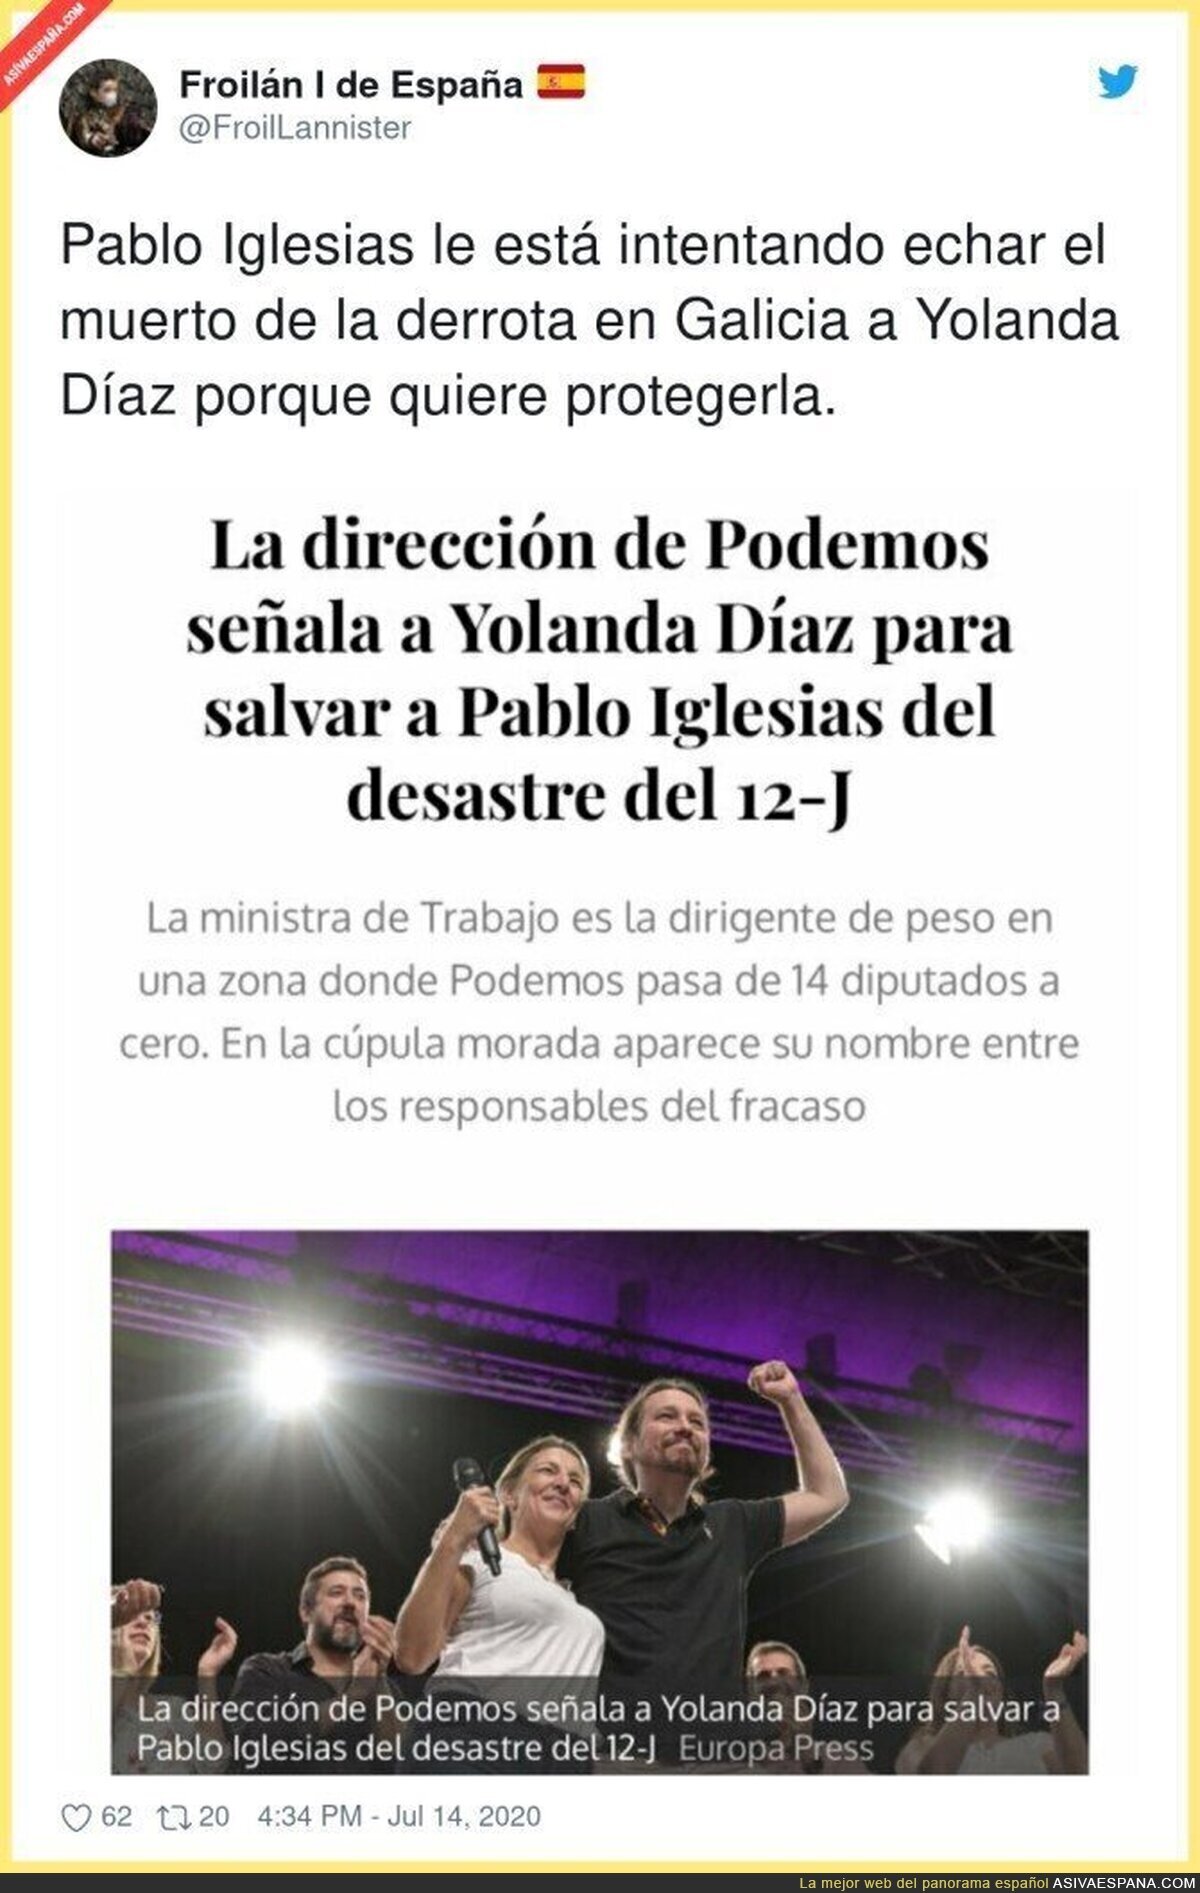 Pablo Iglesias está echando a Podemos al desastre